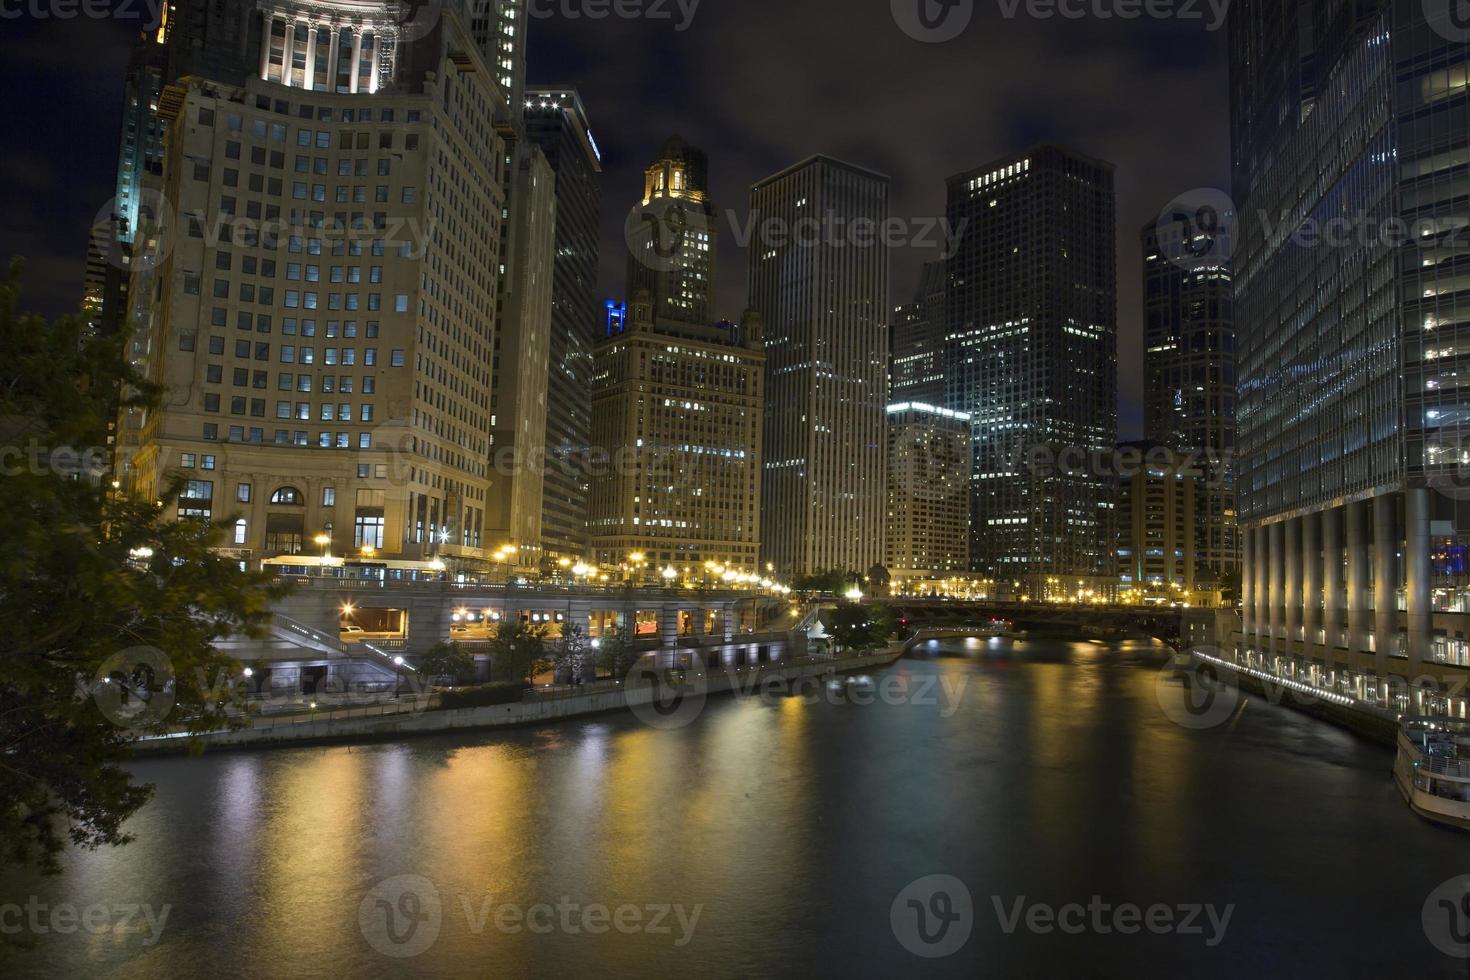 stati uniti d'america - illinois - chicago, chicago river skyline foto